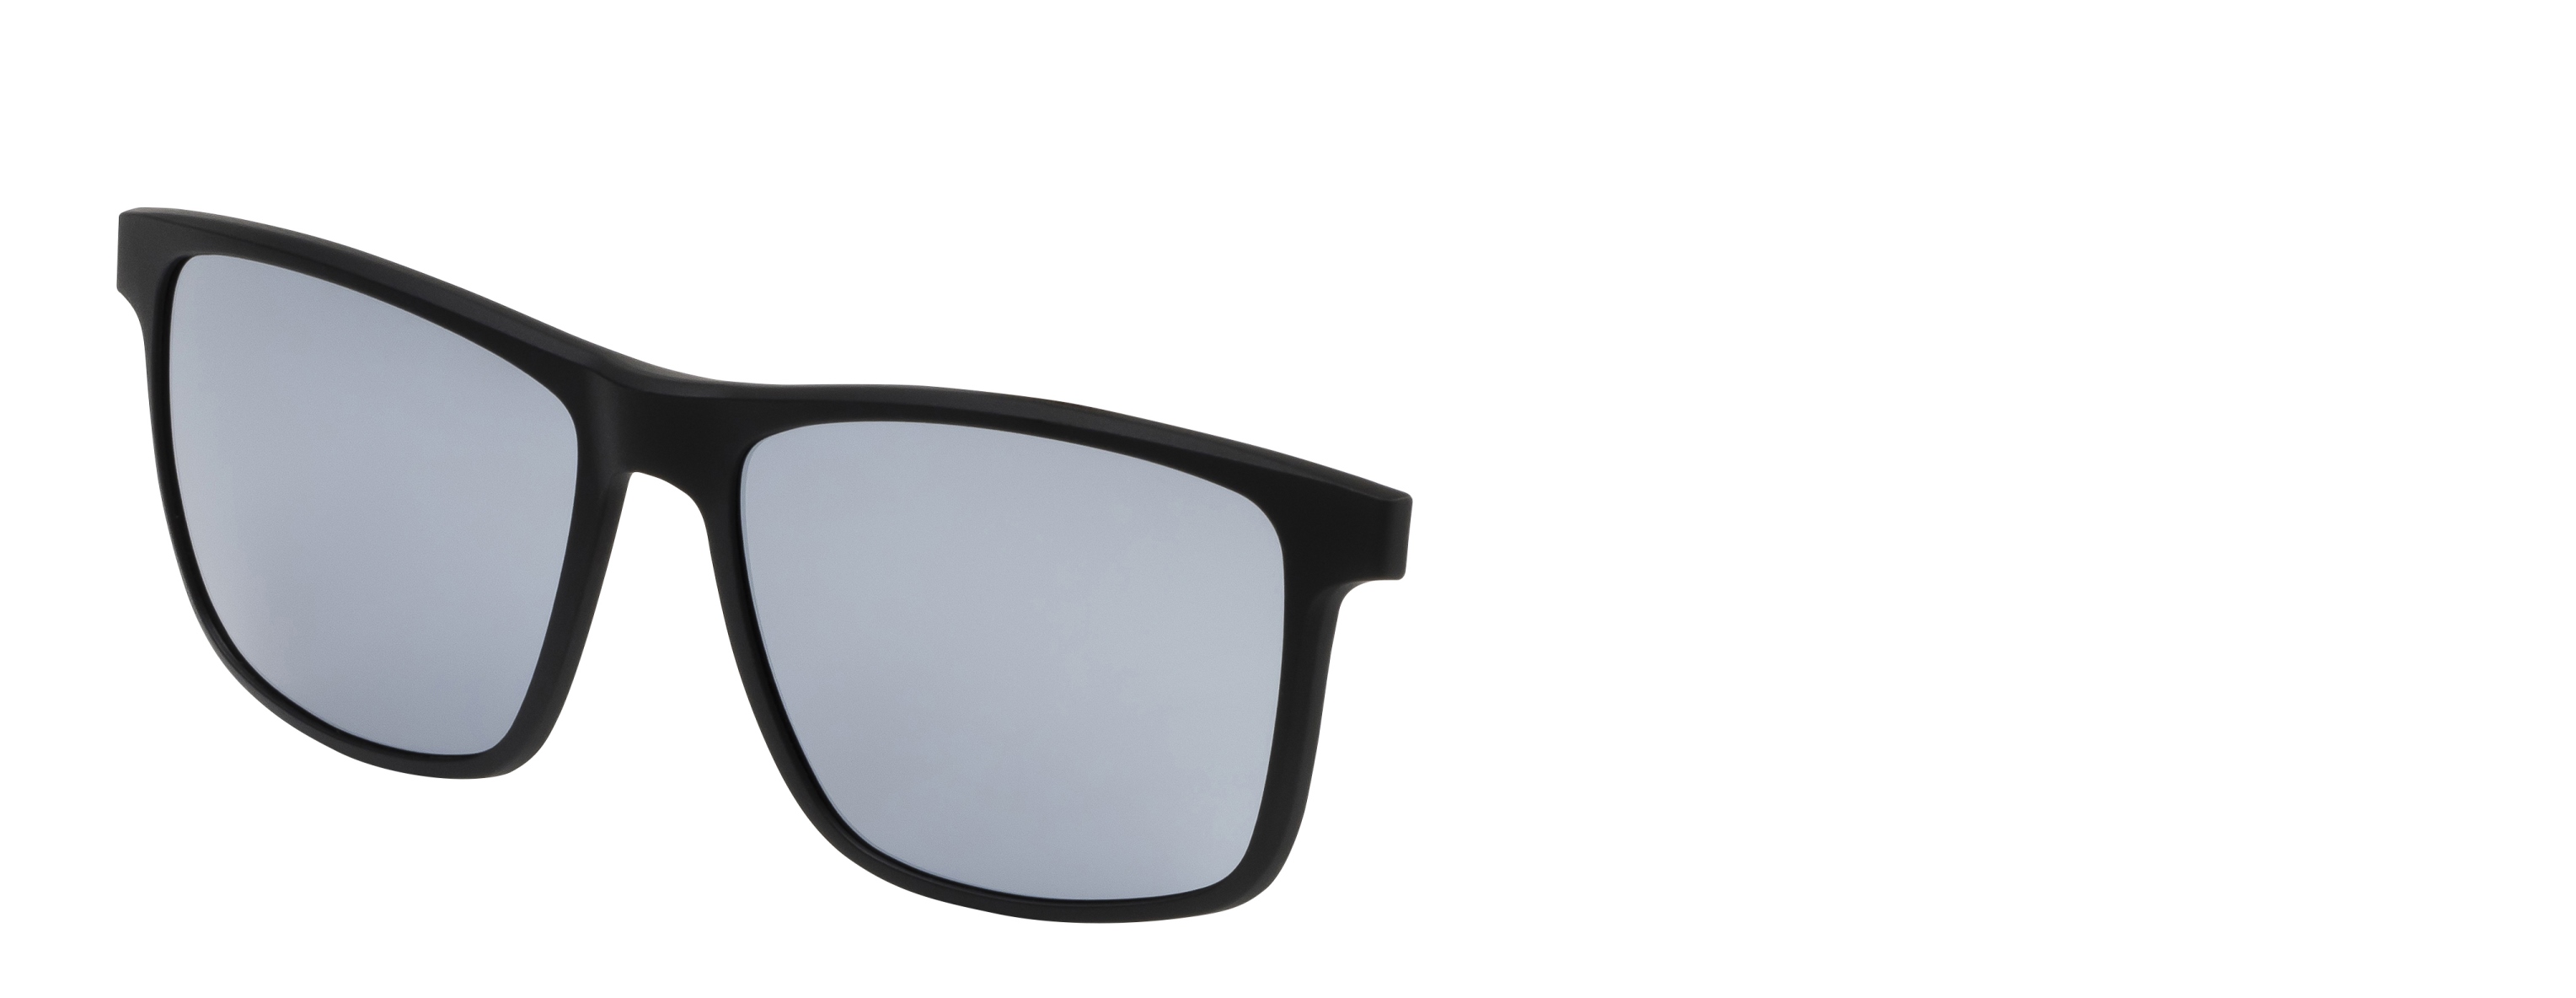 Náhradní dioptrický klip k brýlím Relax  Port RM136C3clip -